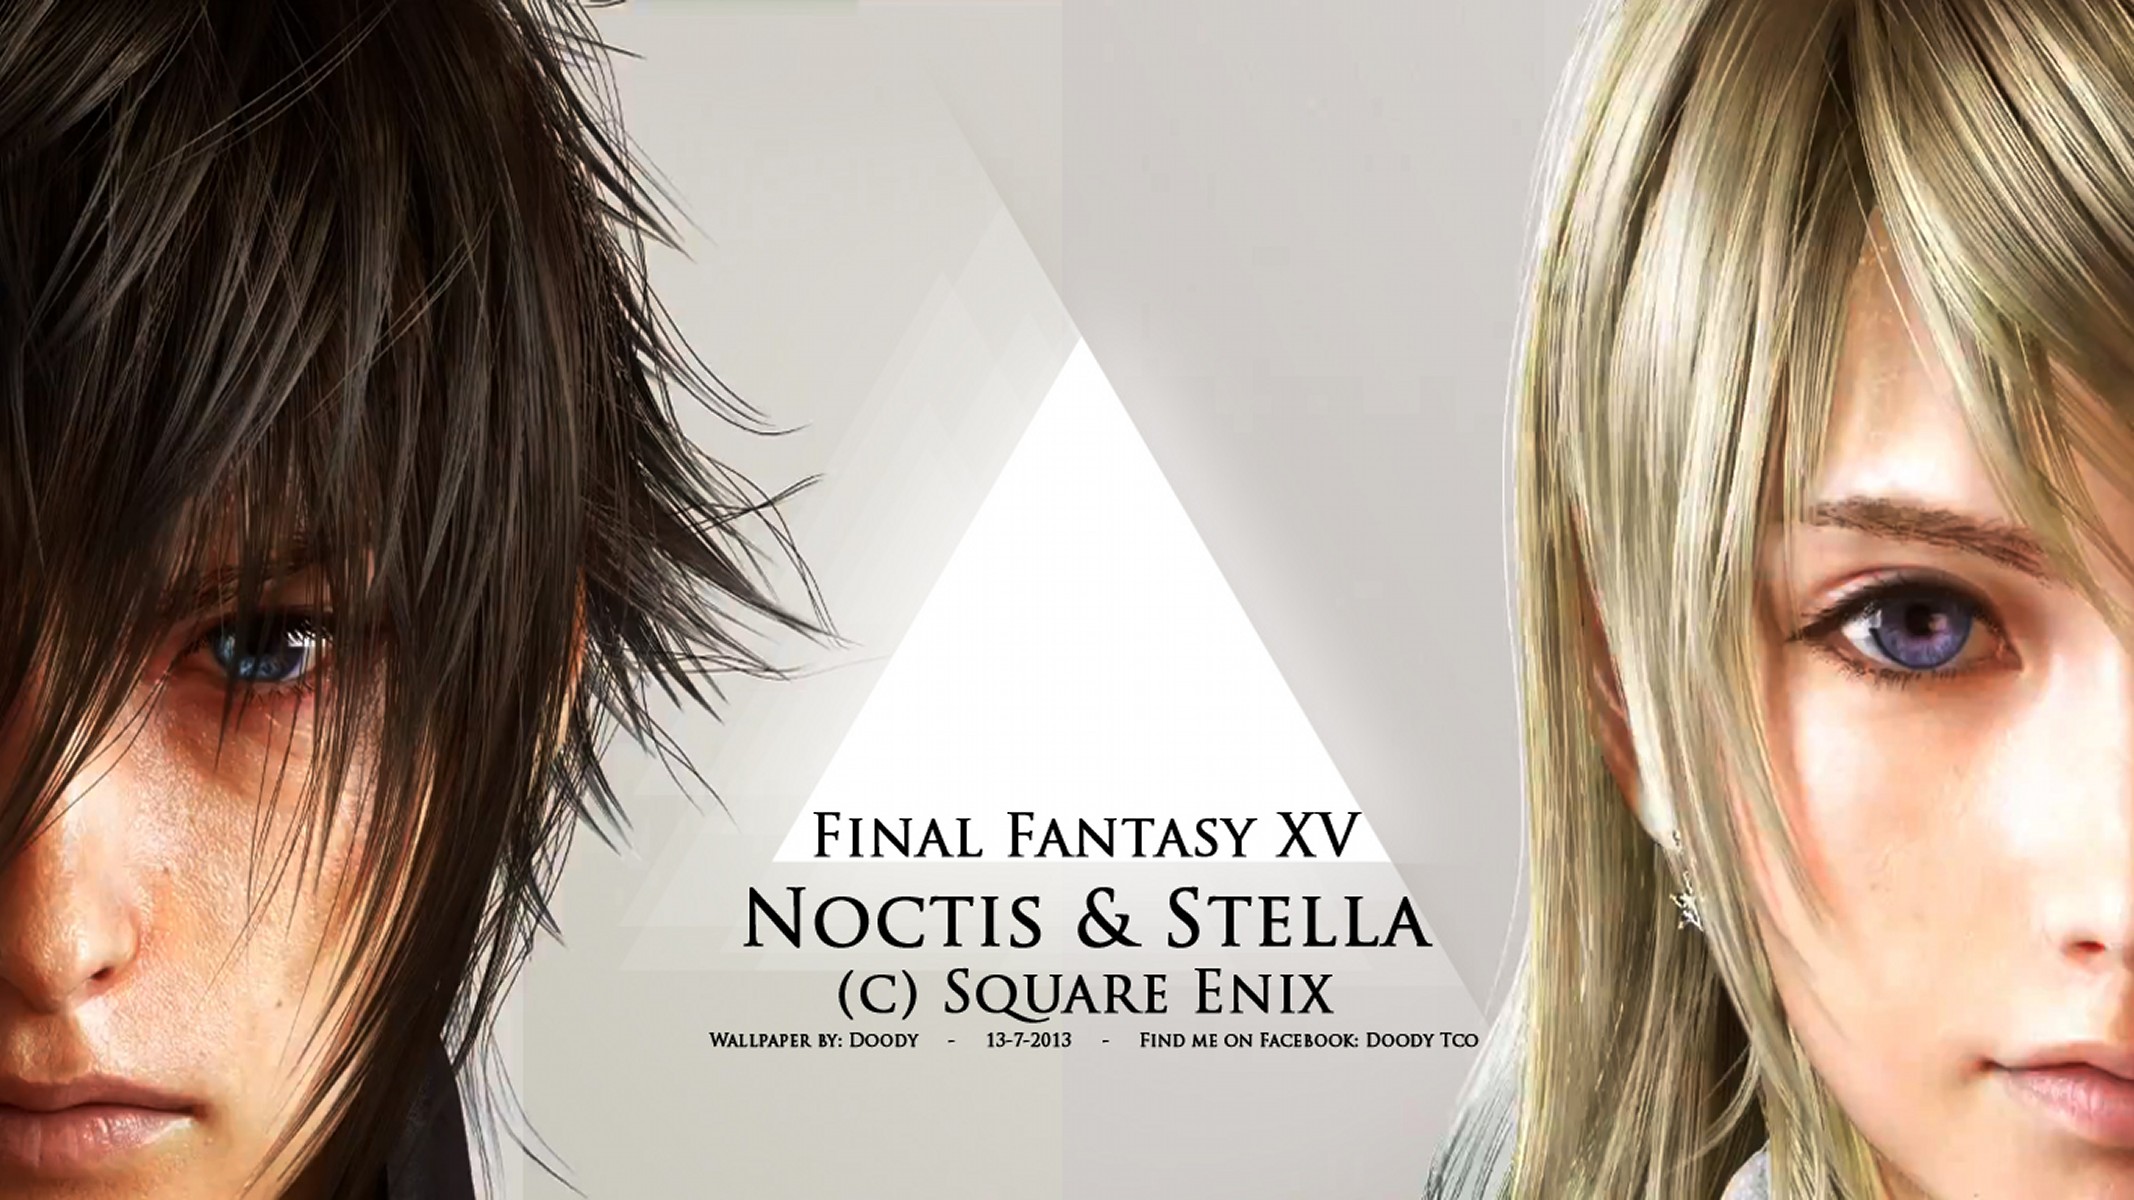 Final Fantasy XV HD Wallpapers Best Wallpapers FanDownload 2134x1200